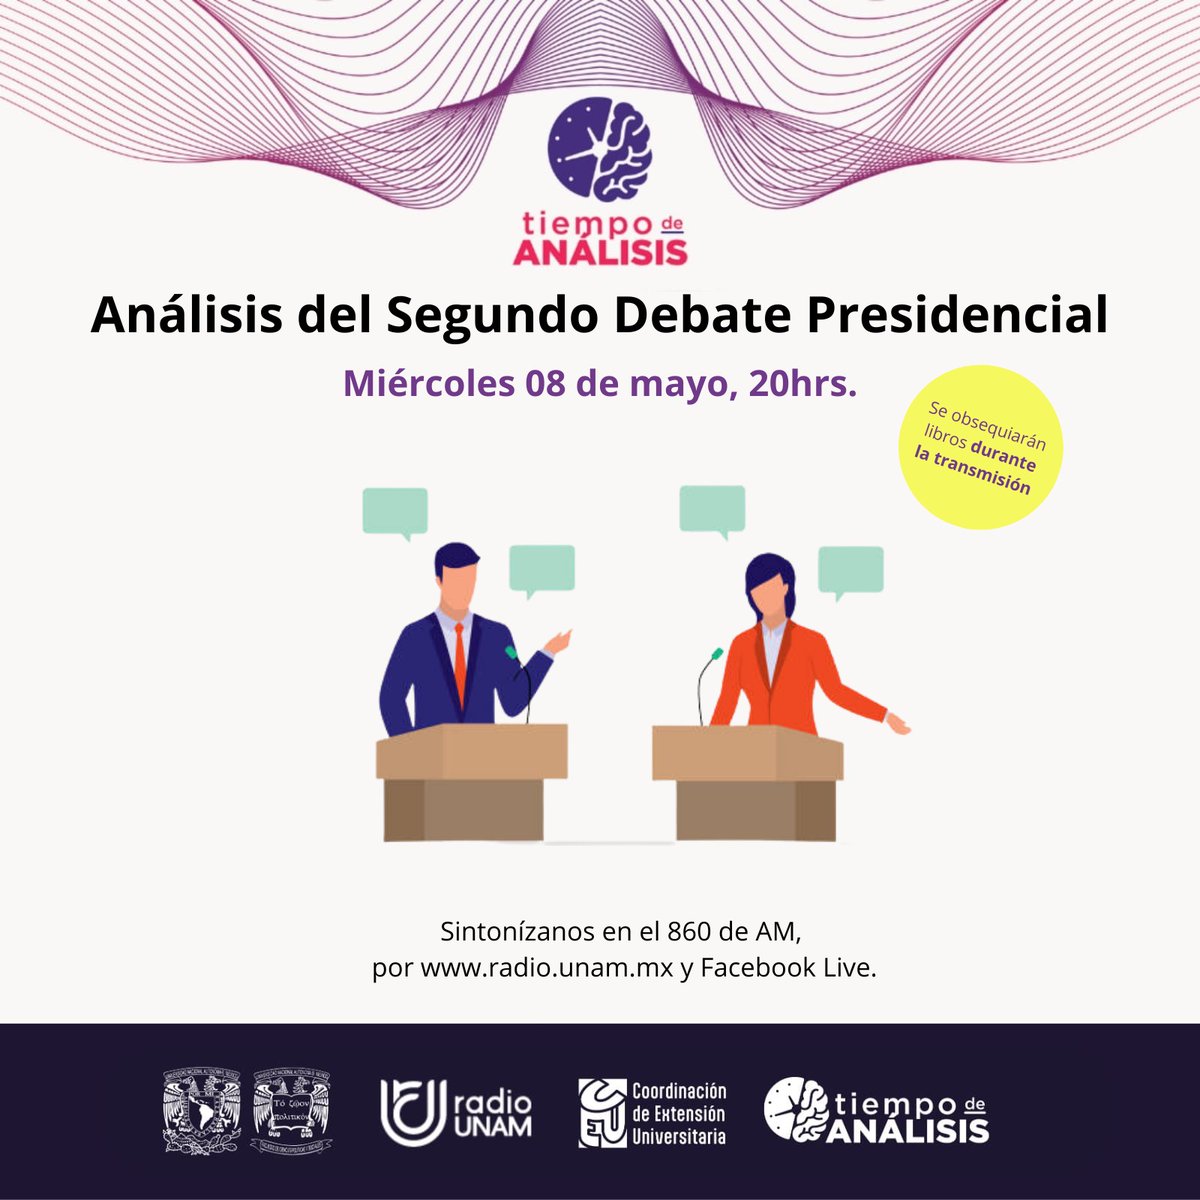 Recuerda que hoy tienes una cita en punto de las 8:00pm con 🧠 @Tiempo_Analisis nuestro tema será: 🗣 Análisis del Segundo Debate Presidencial 📻 Sintonízanos en el 860 AM o por radio.unam.mx y #facebooklive || #debate #DebatePresidencial #Política #CEU #FCPyS #UNAM